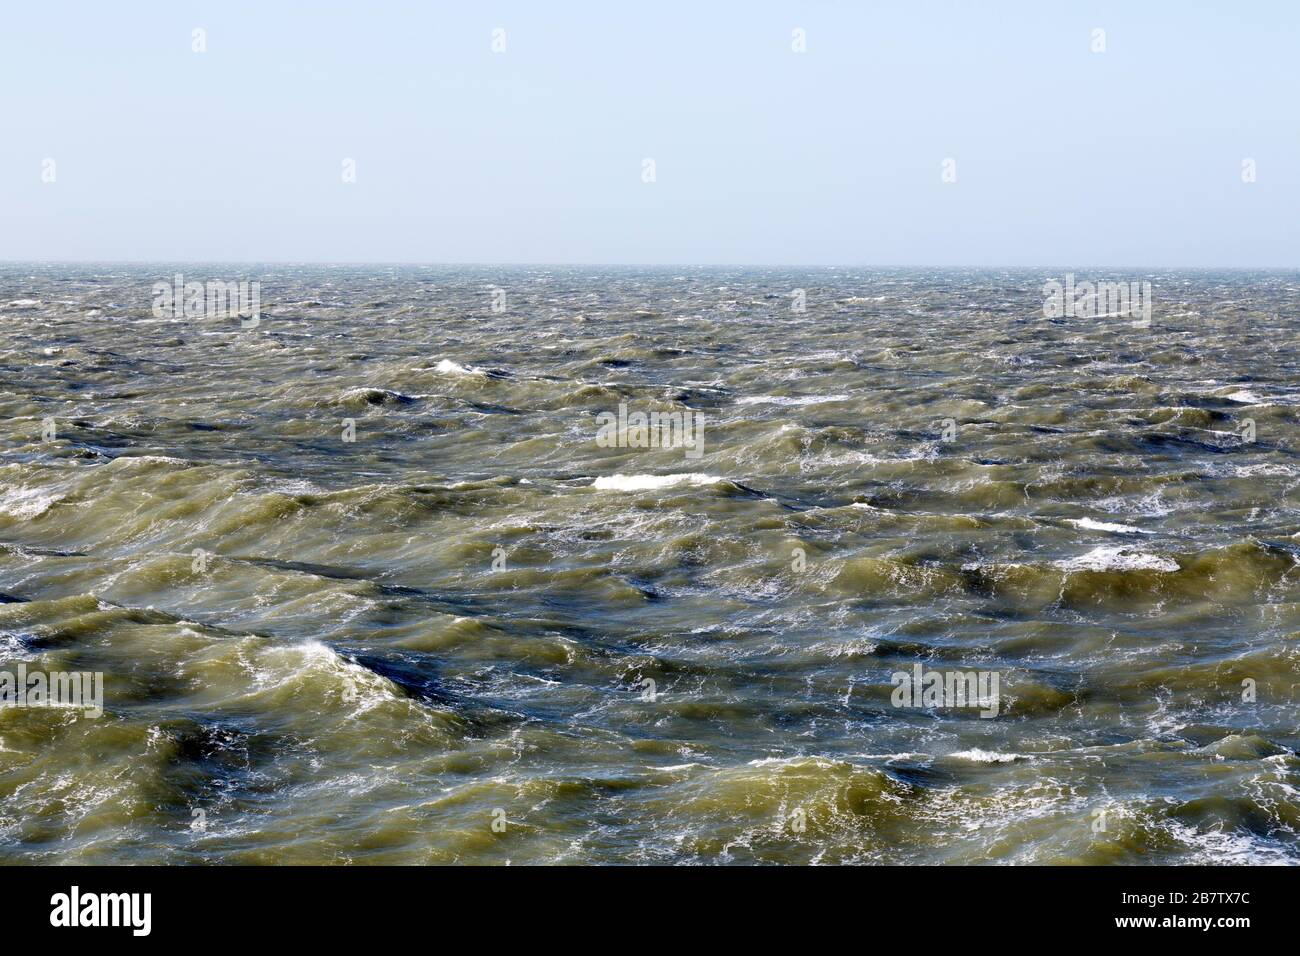 La mer du Nord dans les eaux internationales. Les vagues sont ondulations par des bouchons blancs. Banque D'Images